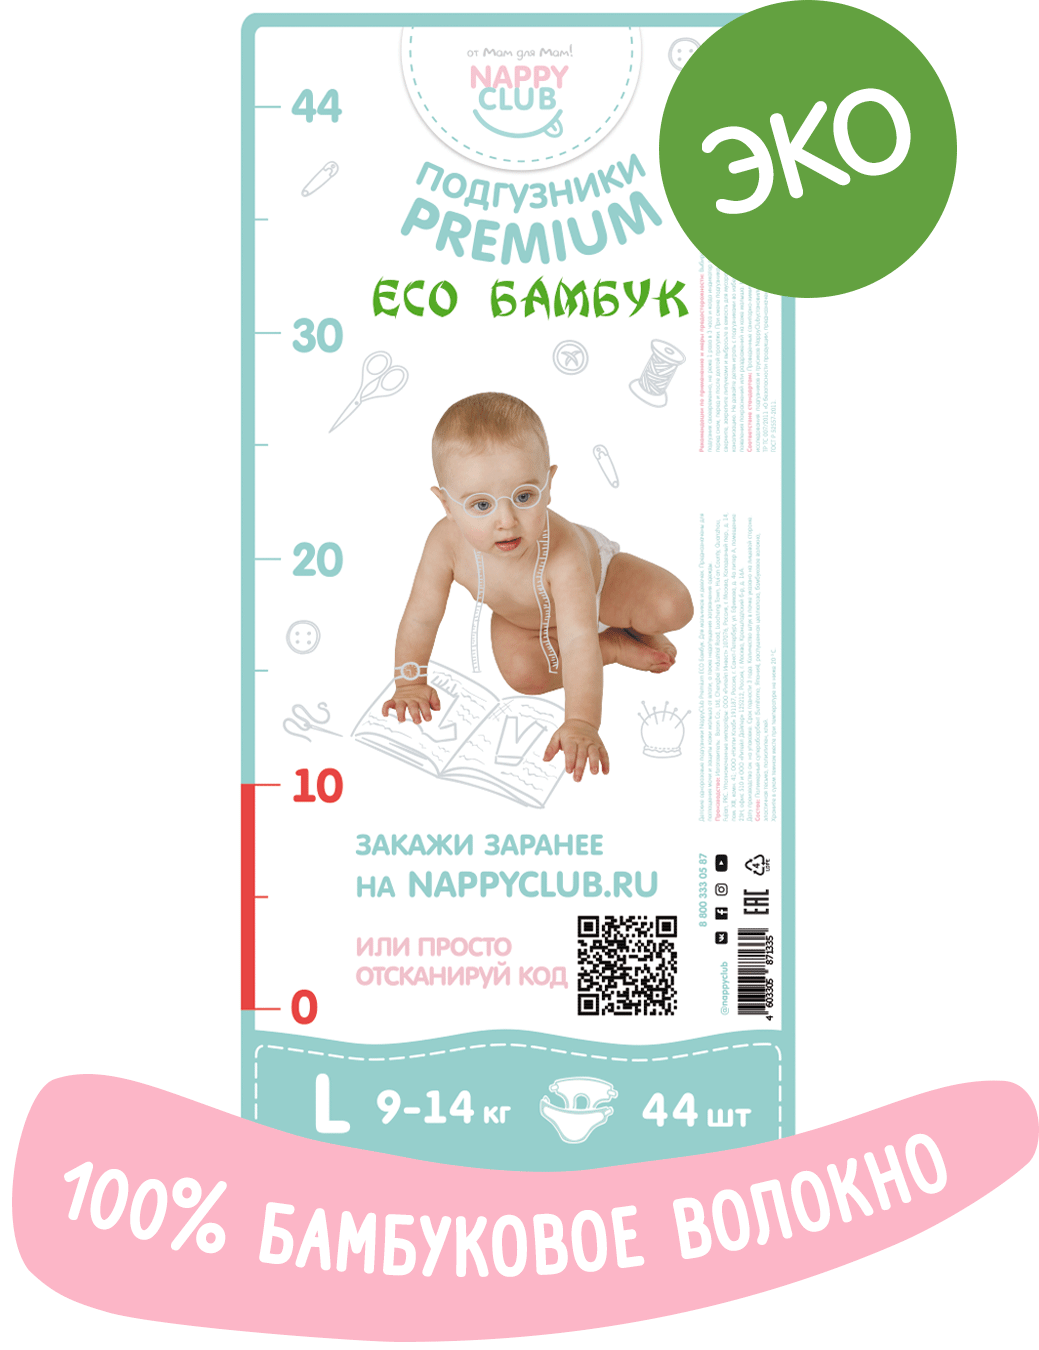 Подгузники Premium ECO Бамбук от Nappyclub